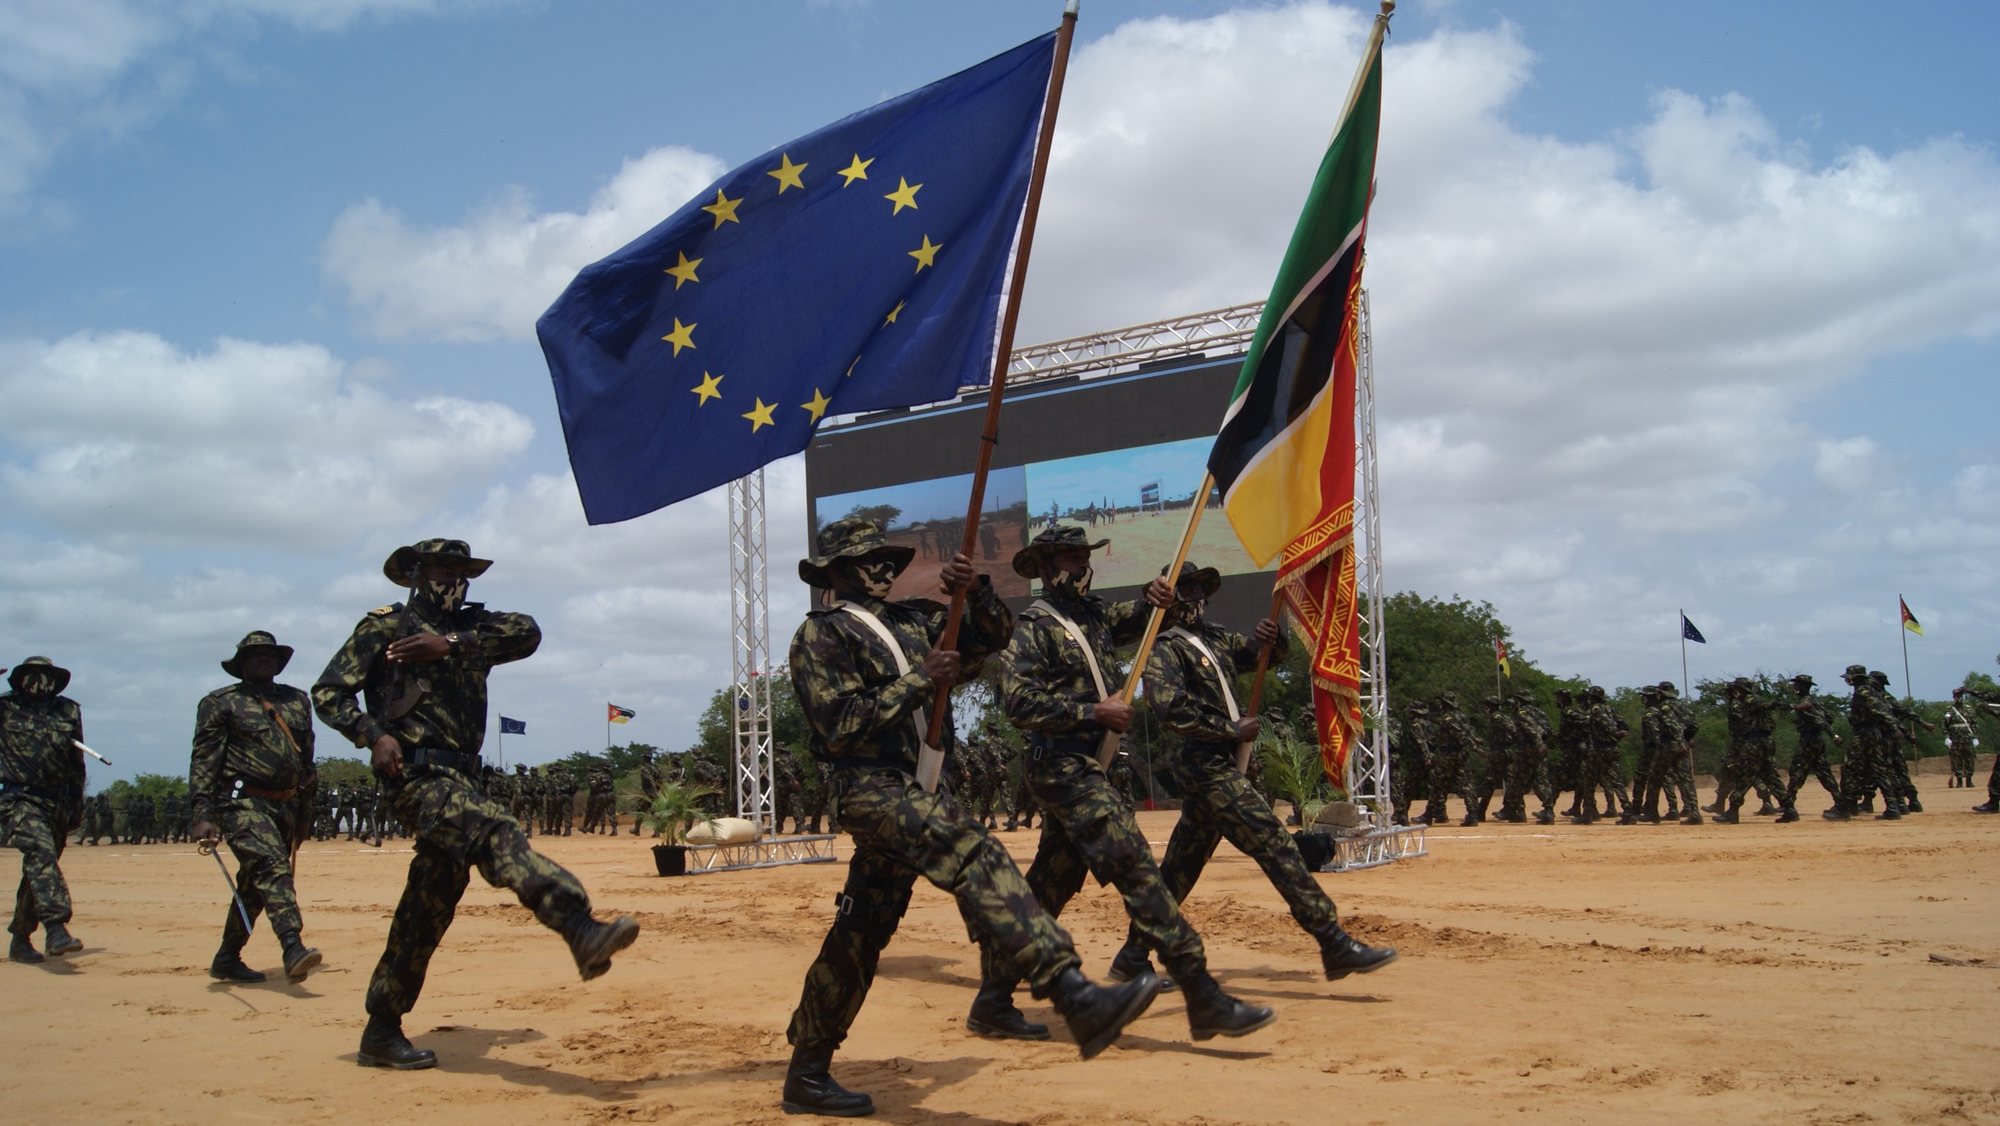 Cerimónia oficial de lançamento da primeira missão militar de formação da União Europeia (UE) em Moçambique, dedicada a treinar tropas para enfrentar a insurgência armada em Cabo Delgado.  Maputo, Moçambique, 03 de novembro de 2021. A missão de dois anos, designada EUTM (European Union Training Mission) Moçambique conta com 140 militares formadores e responde ao pedido de ajuda do Governo moçambicano para preparação das suas tropas. LUÍSA NHANTUMBO/LUSA